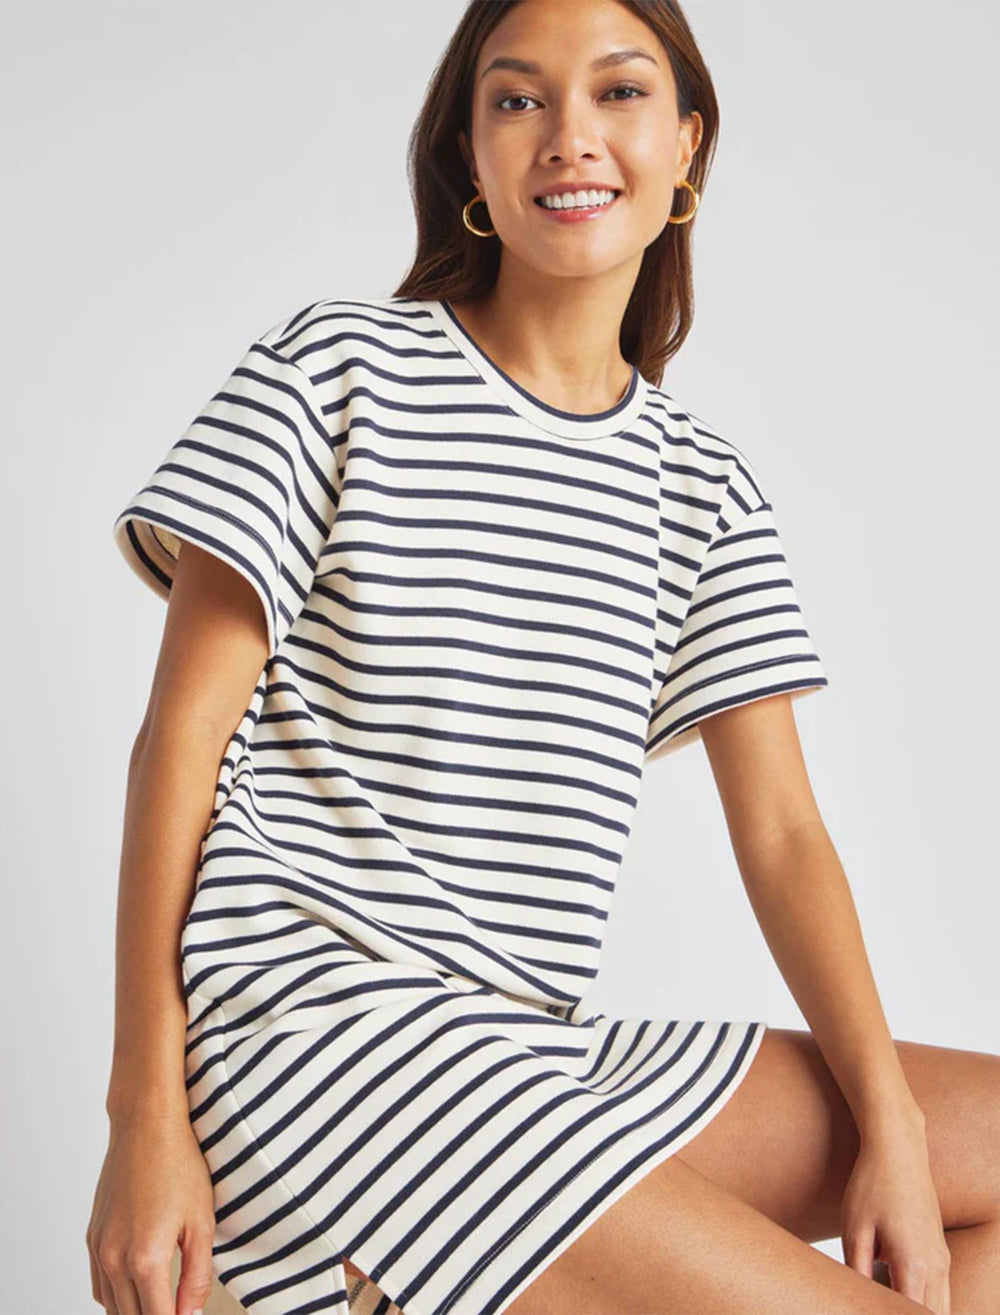 Model wearing Splendid's whitney stripe dress in navy and white.